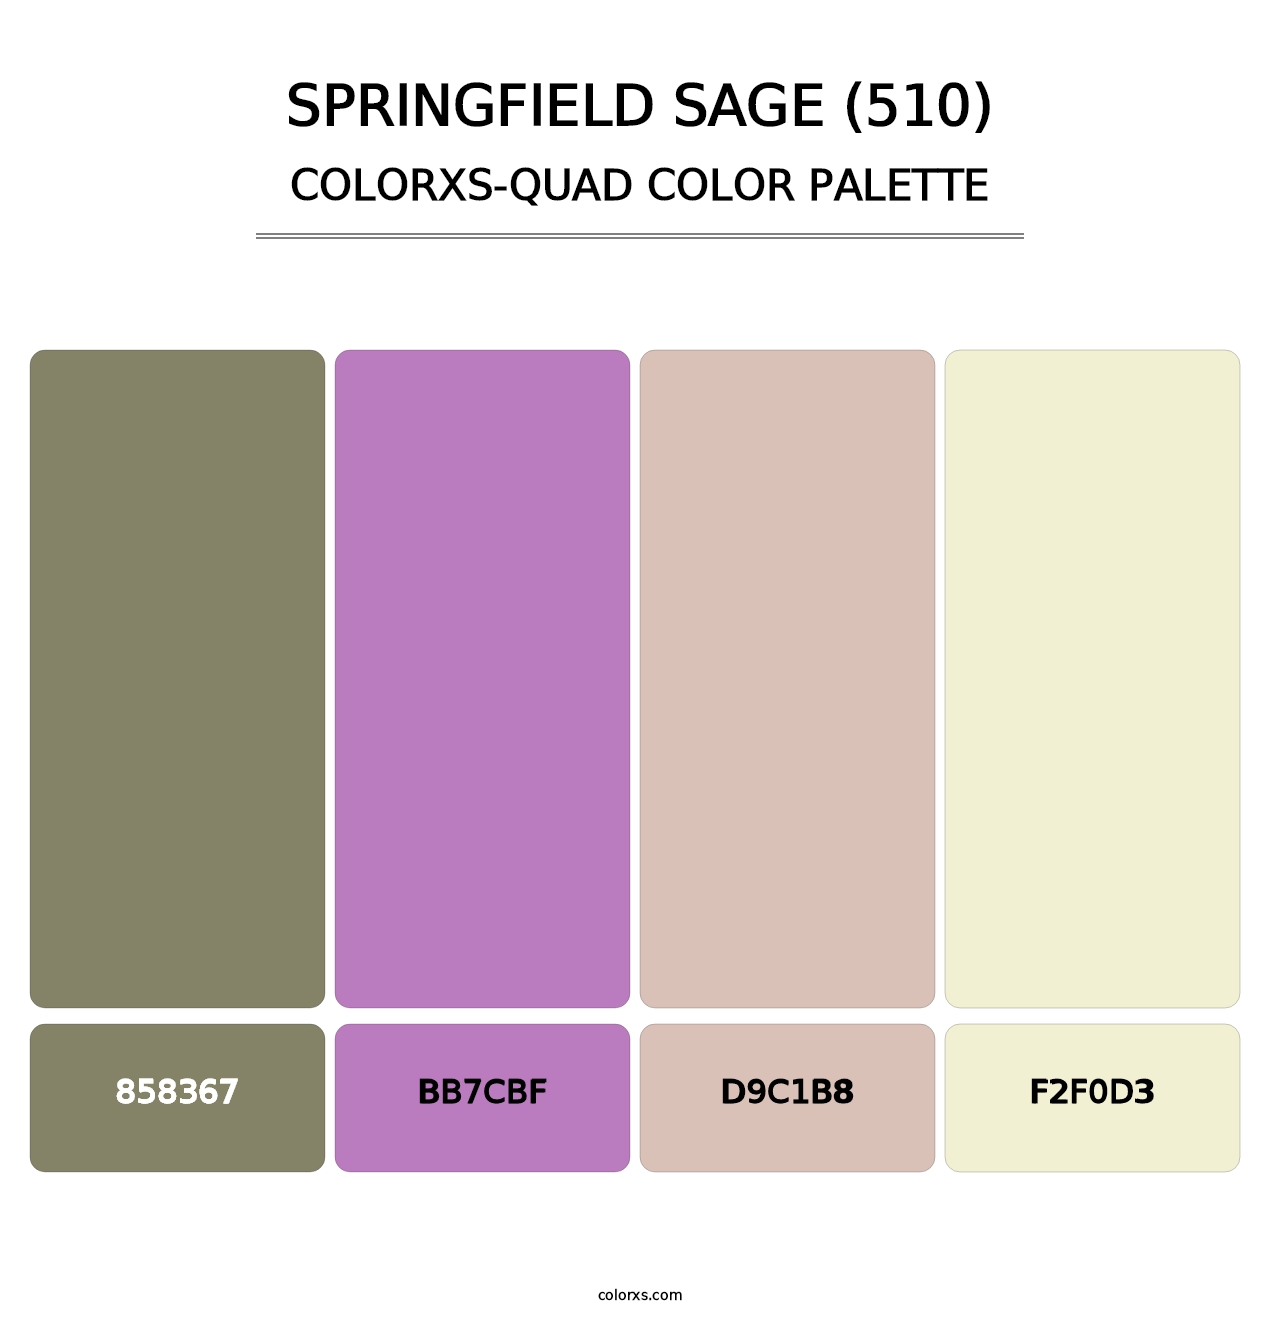 Springfield Sage (510) - Colorxs Quad Palette